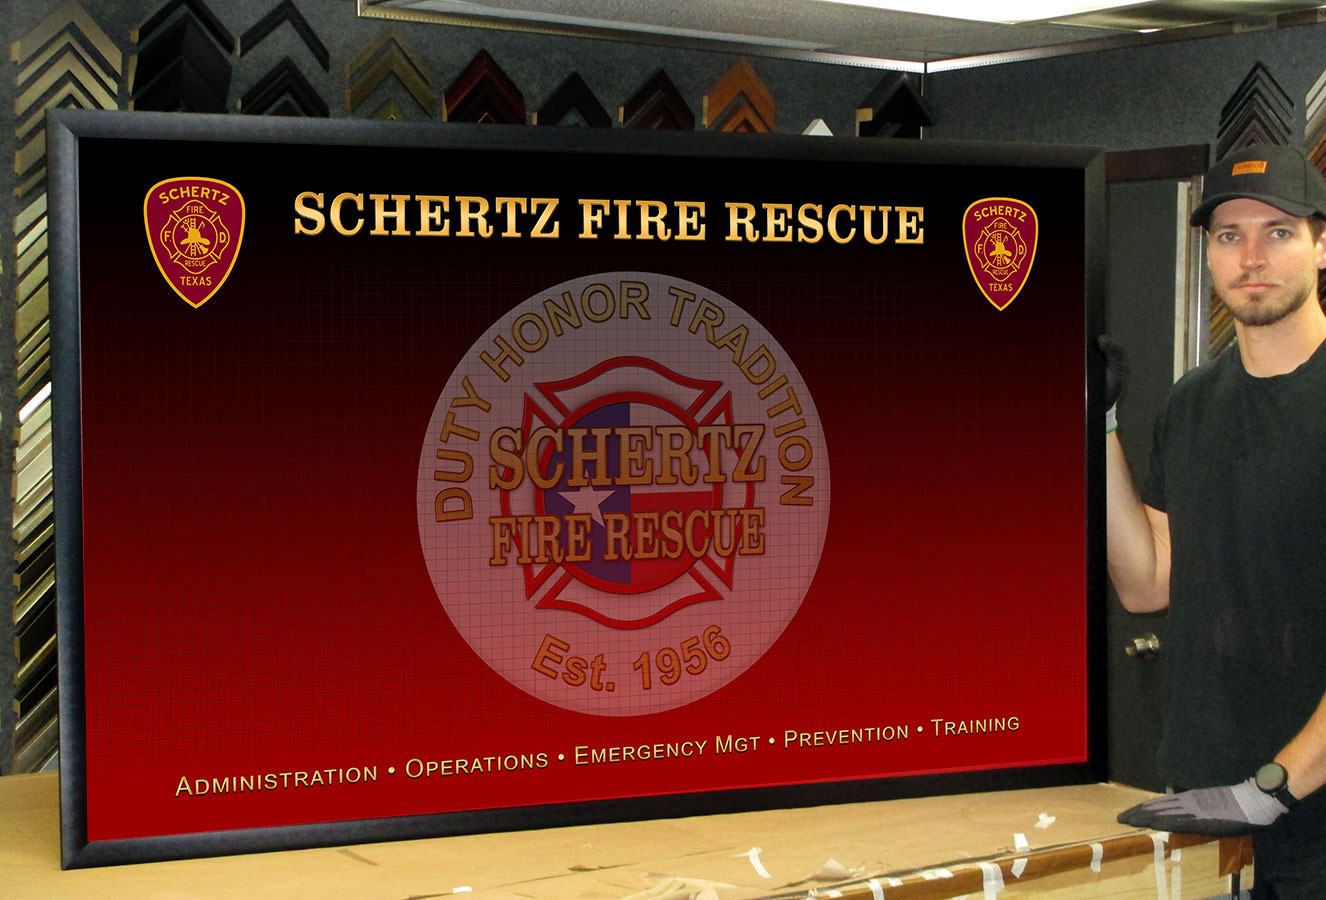 schertz-fire-org-chart.jpg